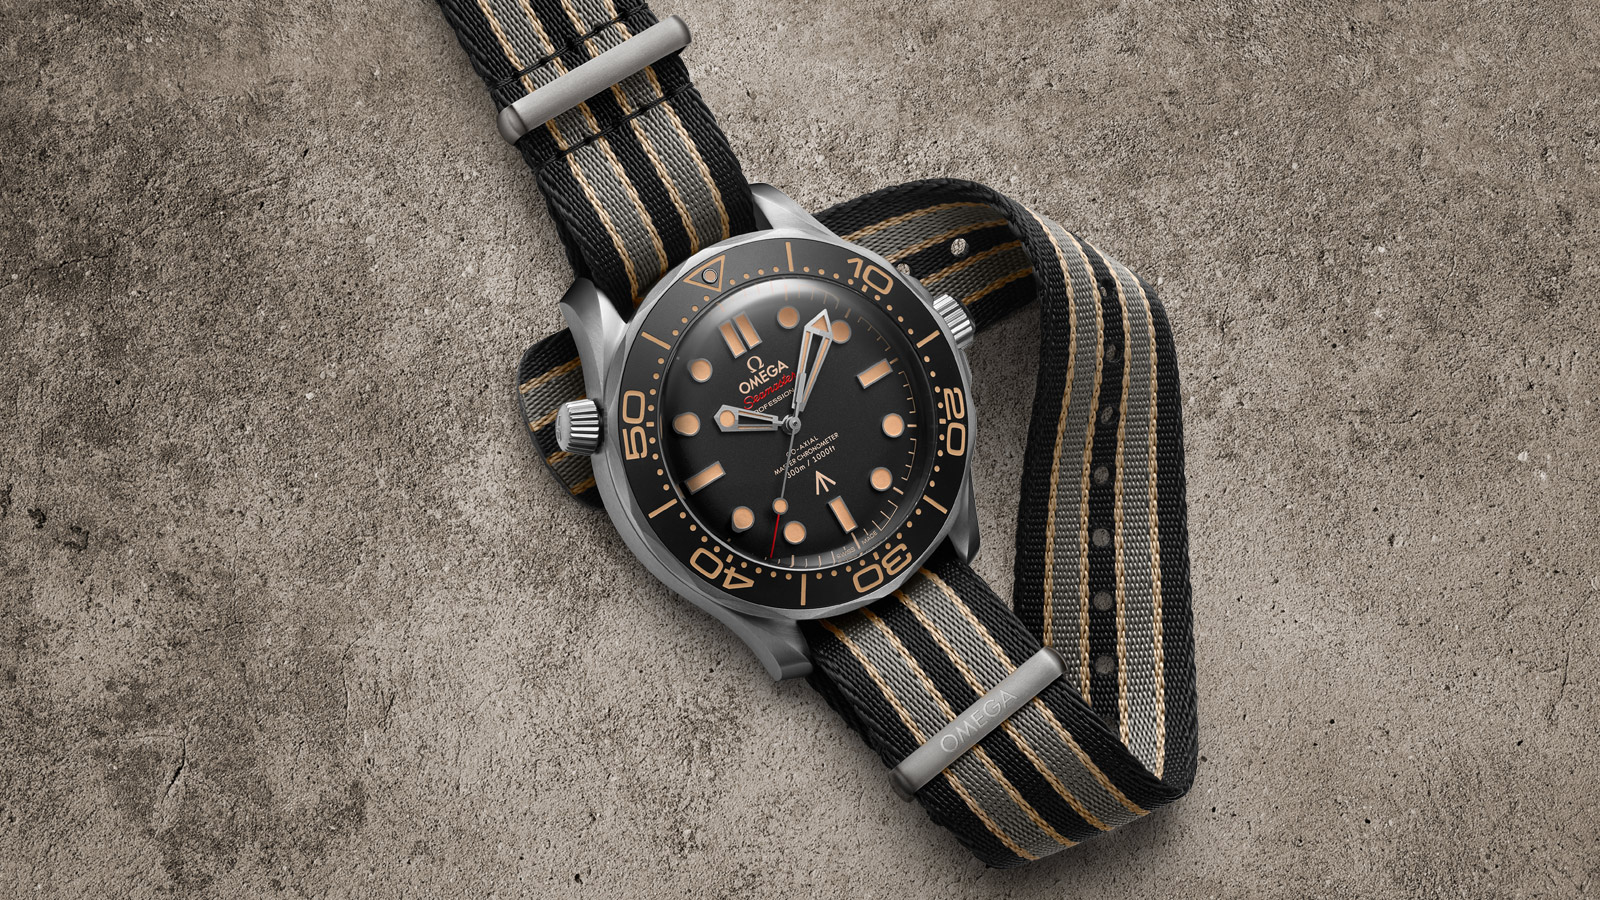 Siêu phẩm mới nhất của chàng điệp viên 007: OMEGA Seamaster Diver 300M 007 Edition - 04